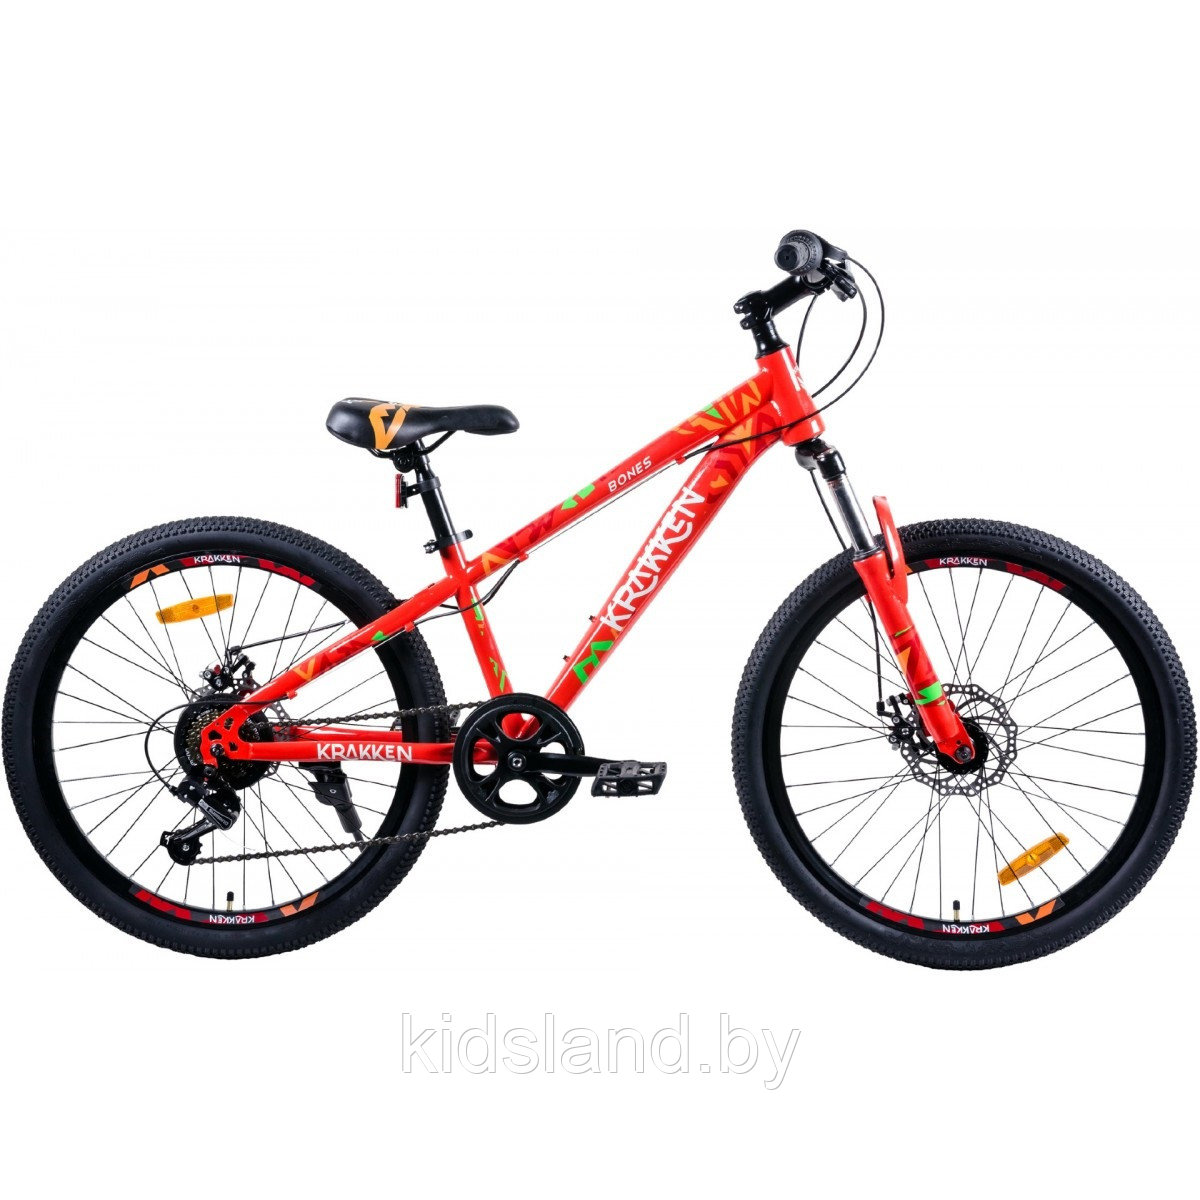 Велосипед Krakken Bones Disc 24 (оранжевый), фото 1